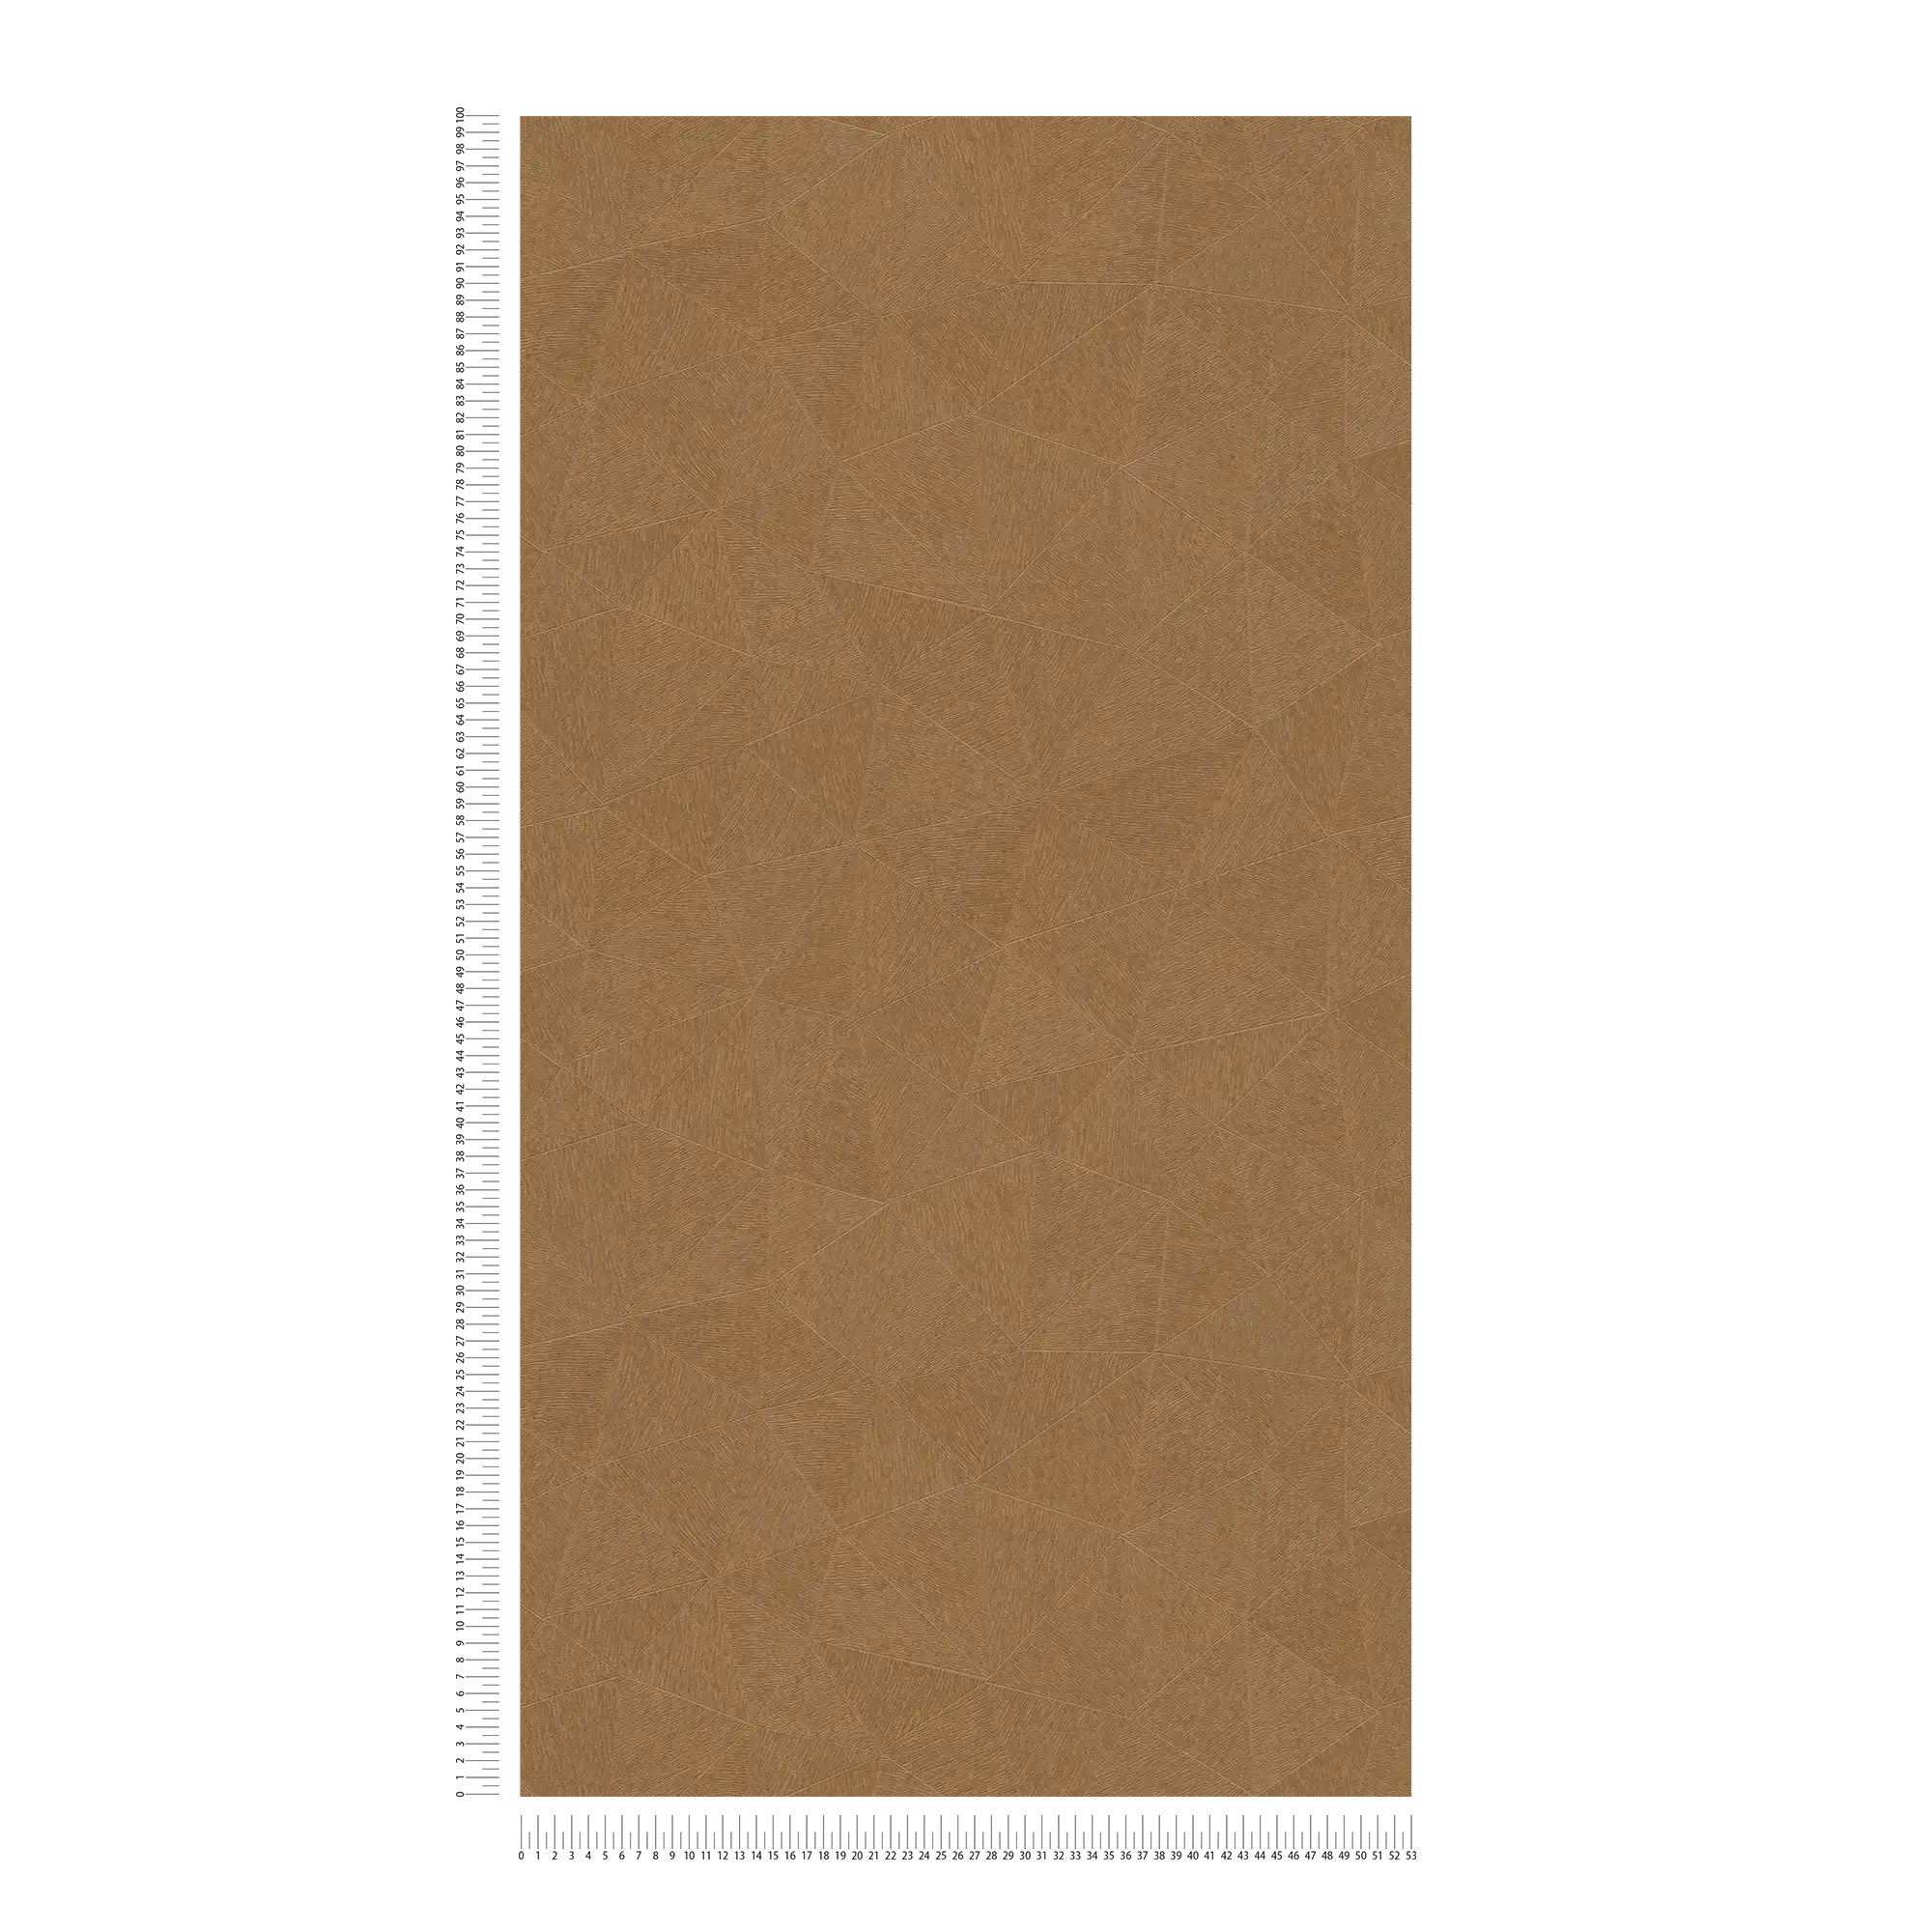             Carta da parati in tessuto non tessuto con discreto motivo a triangoli - marrone
        